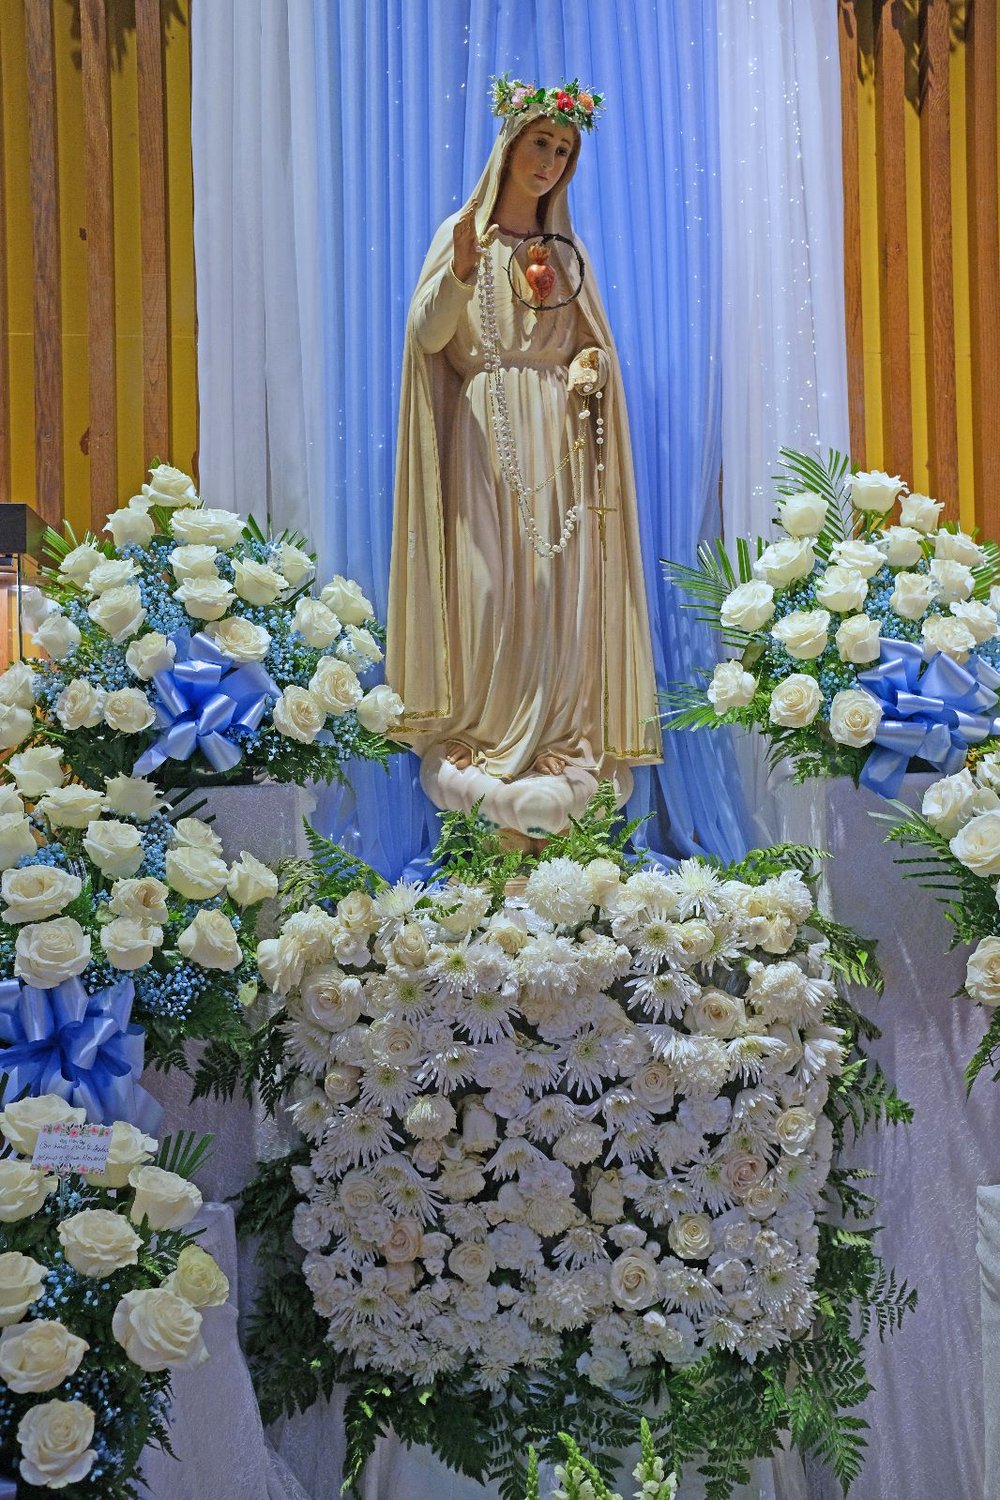 Our Lady of Fatima Parish Perth Amboy